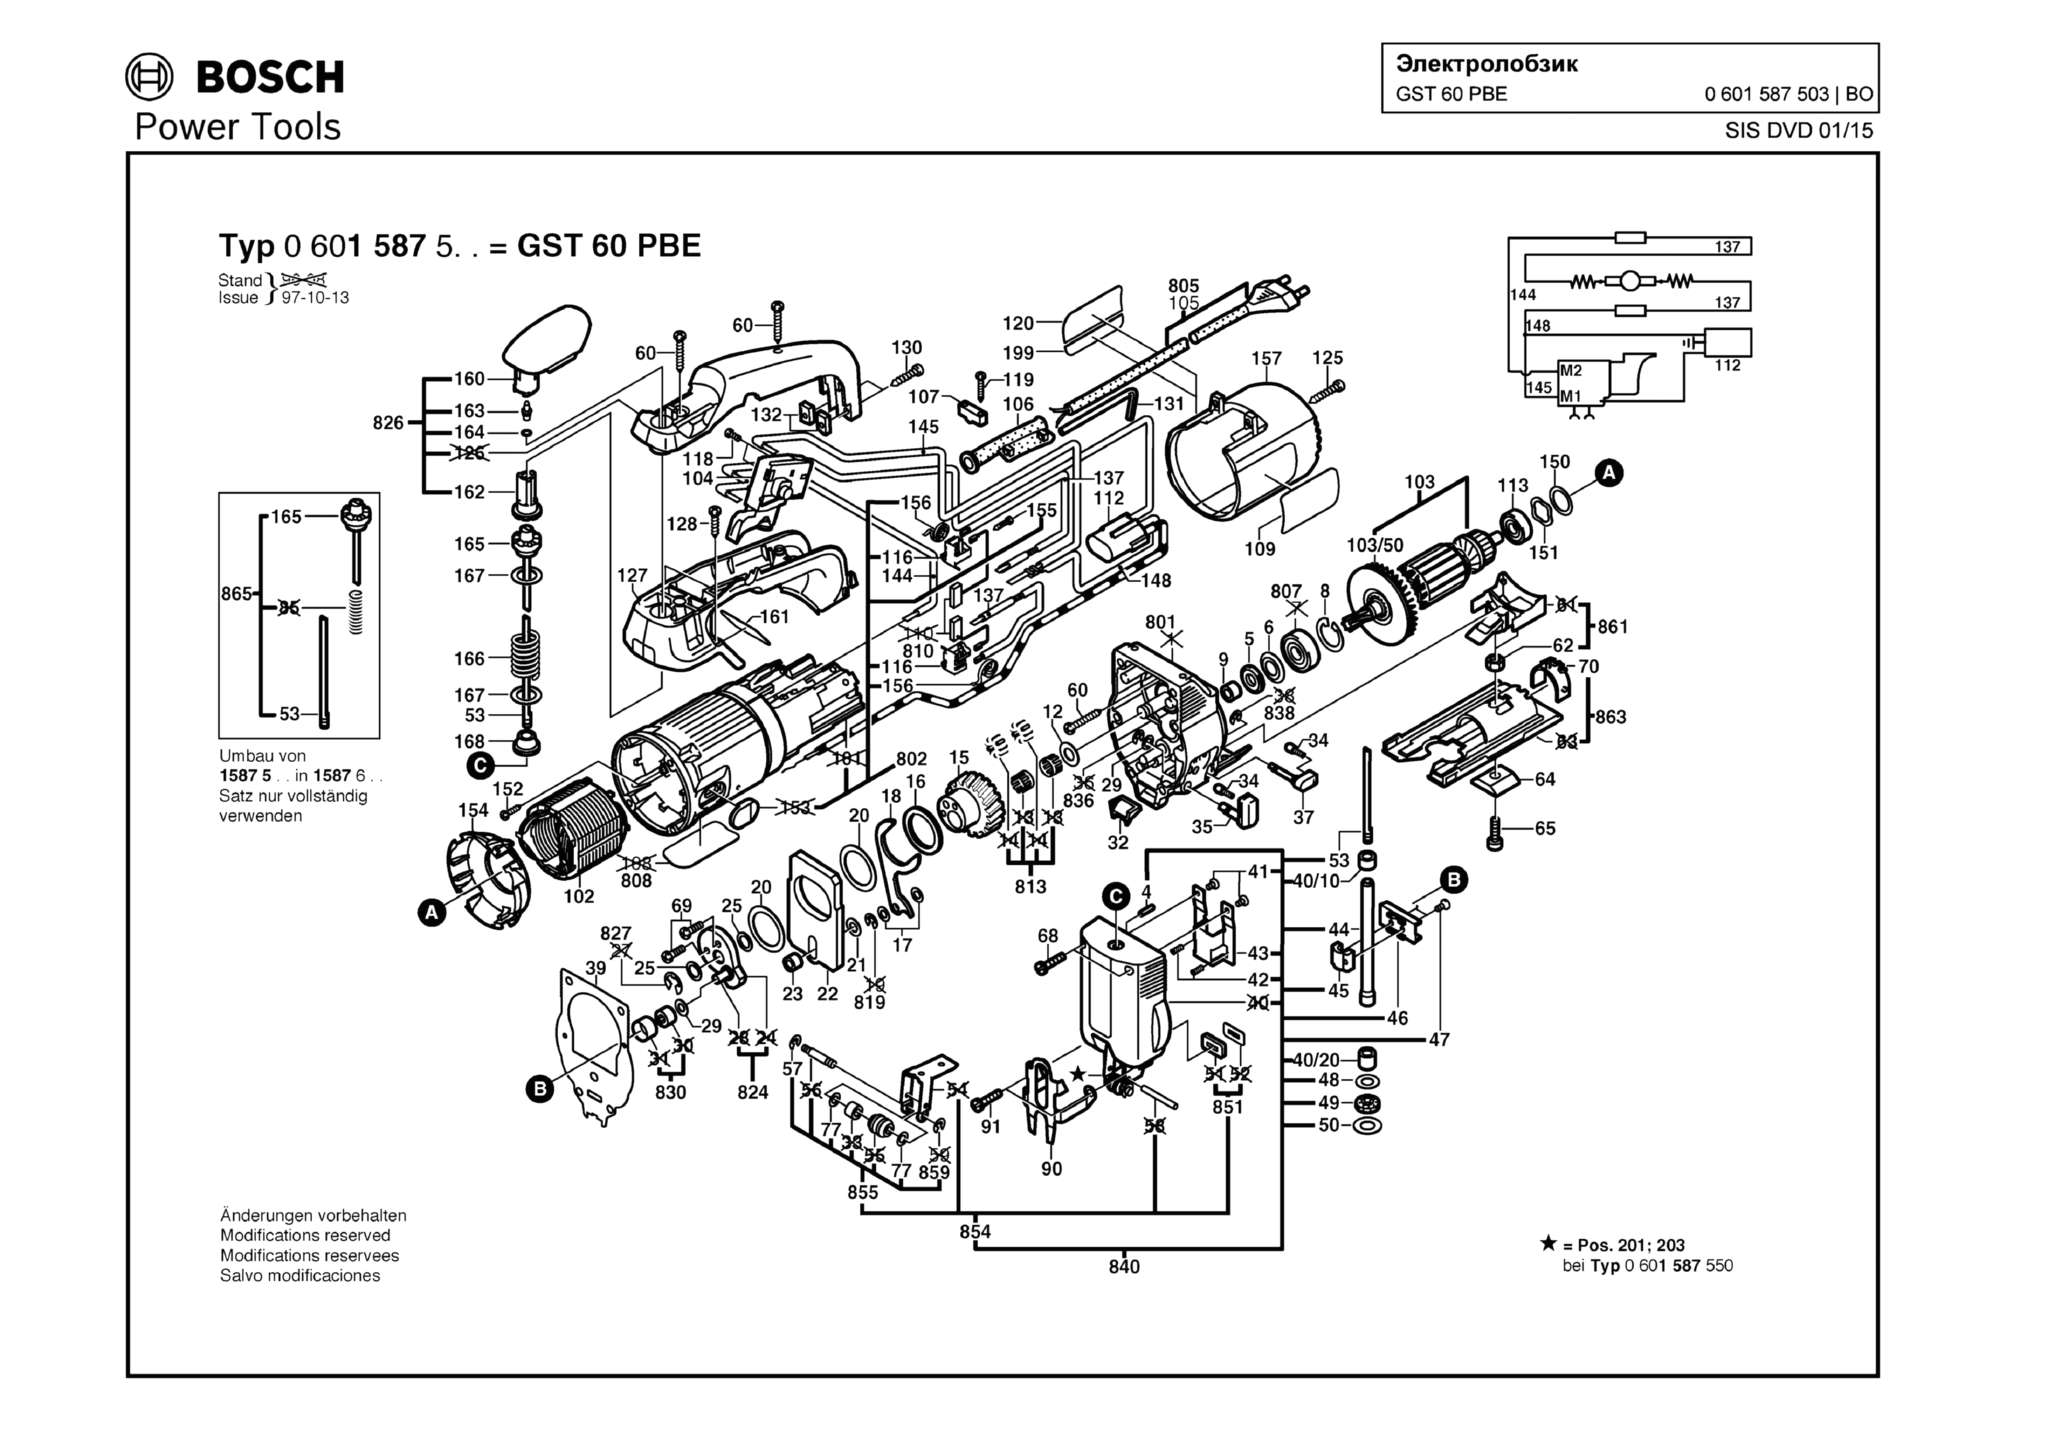 Запчасти, схема и деталировка Bosch GST 60 PBE (ТИП 0601587503)